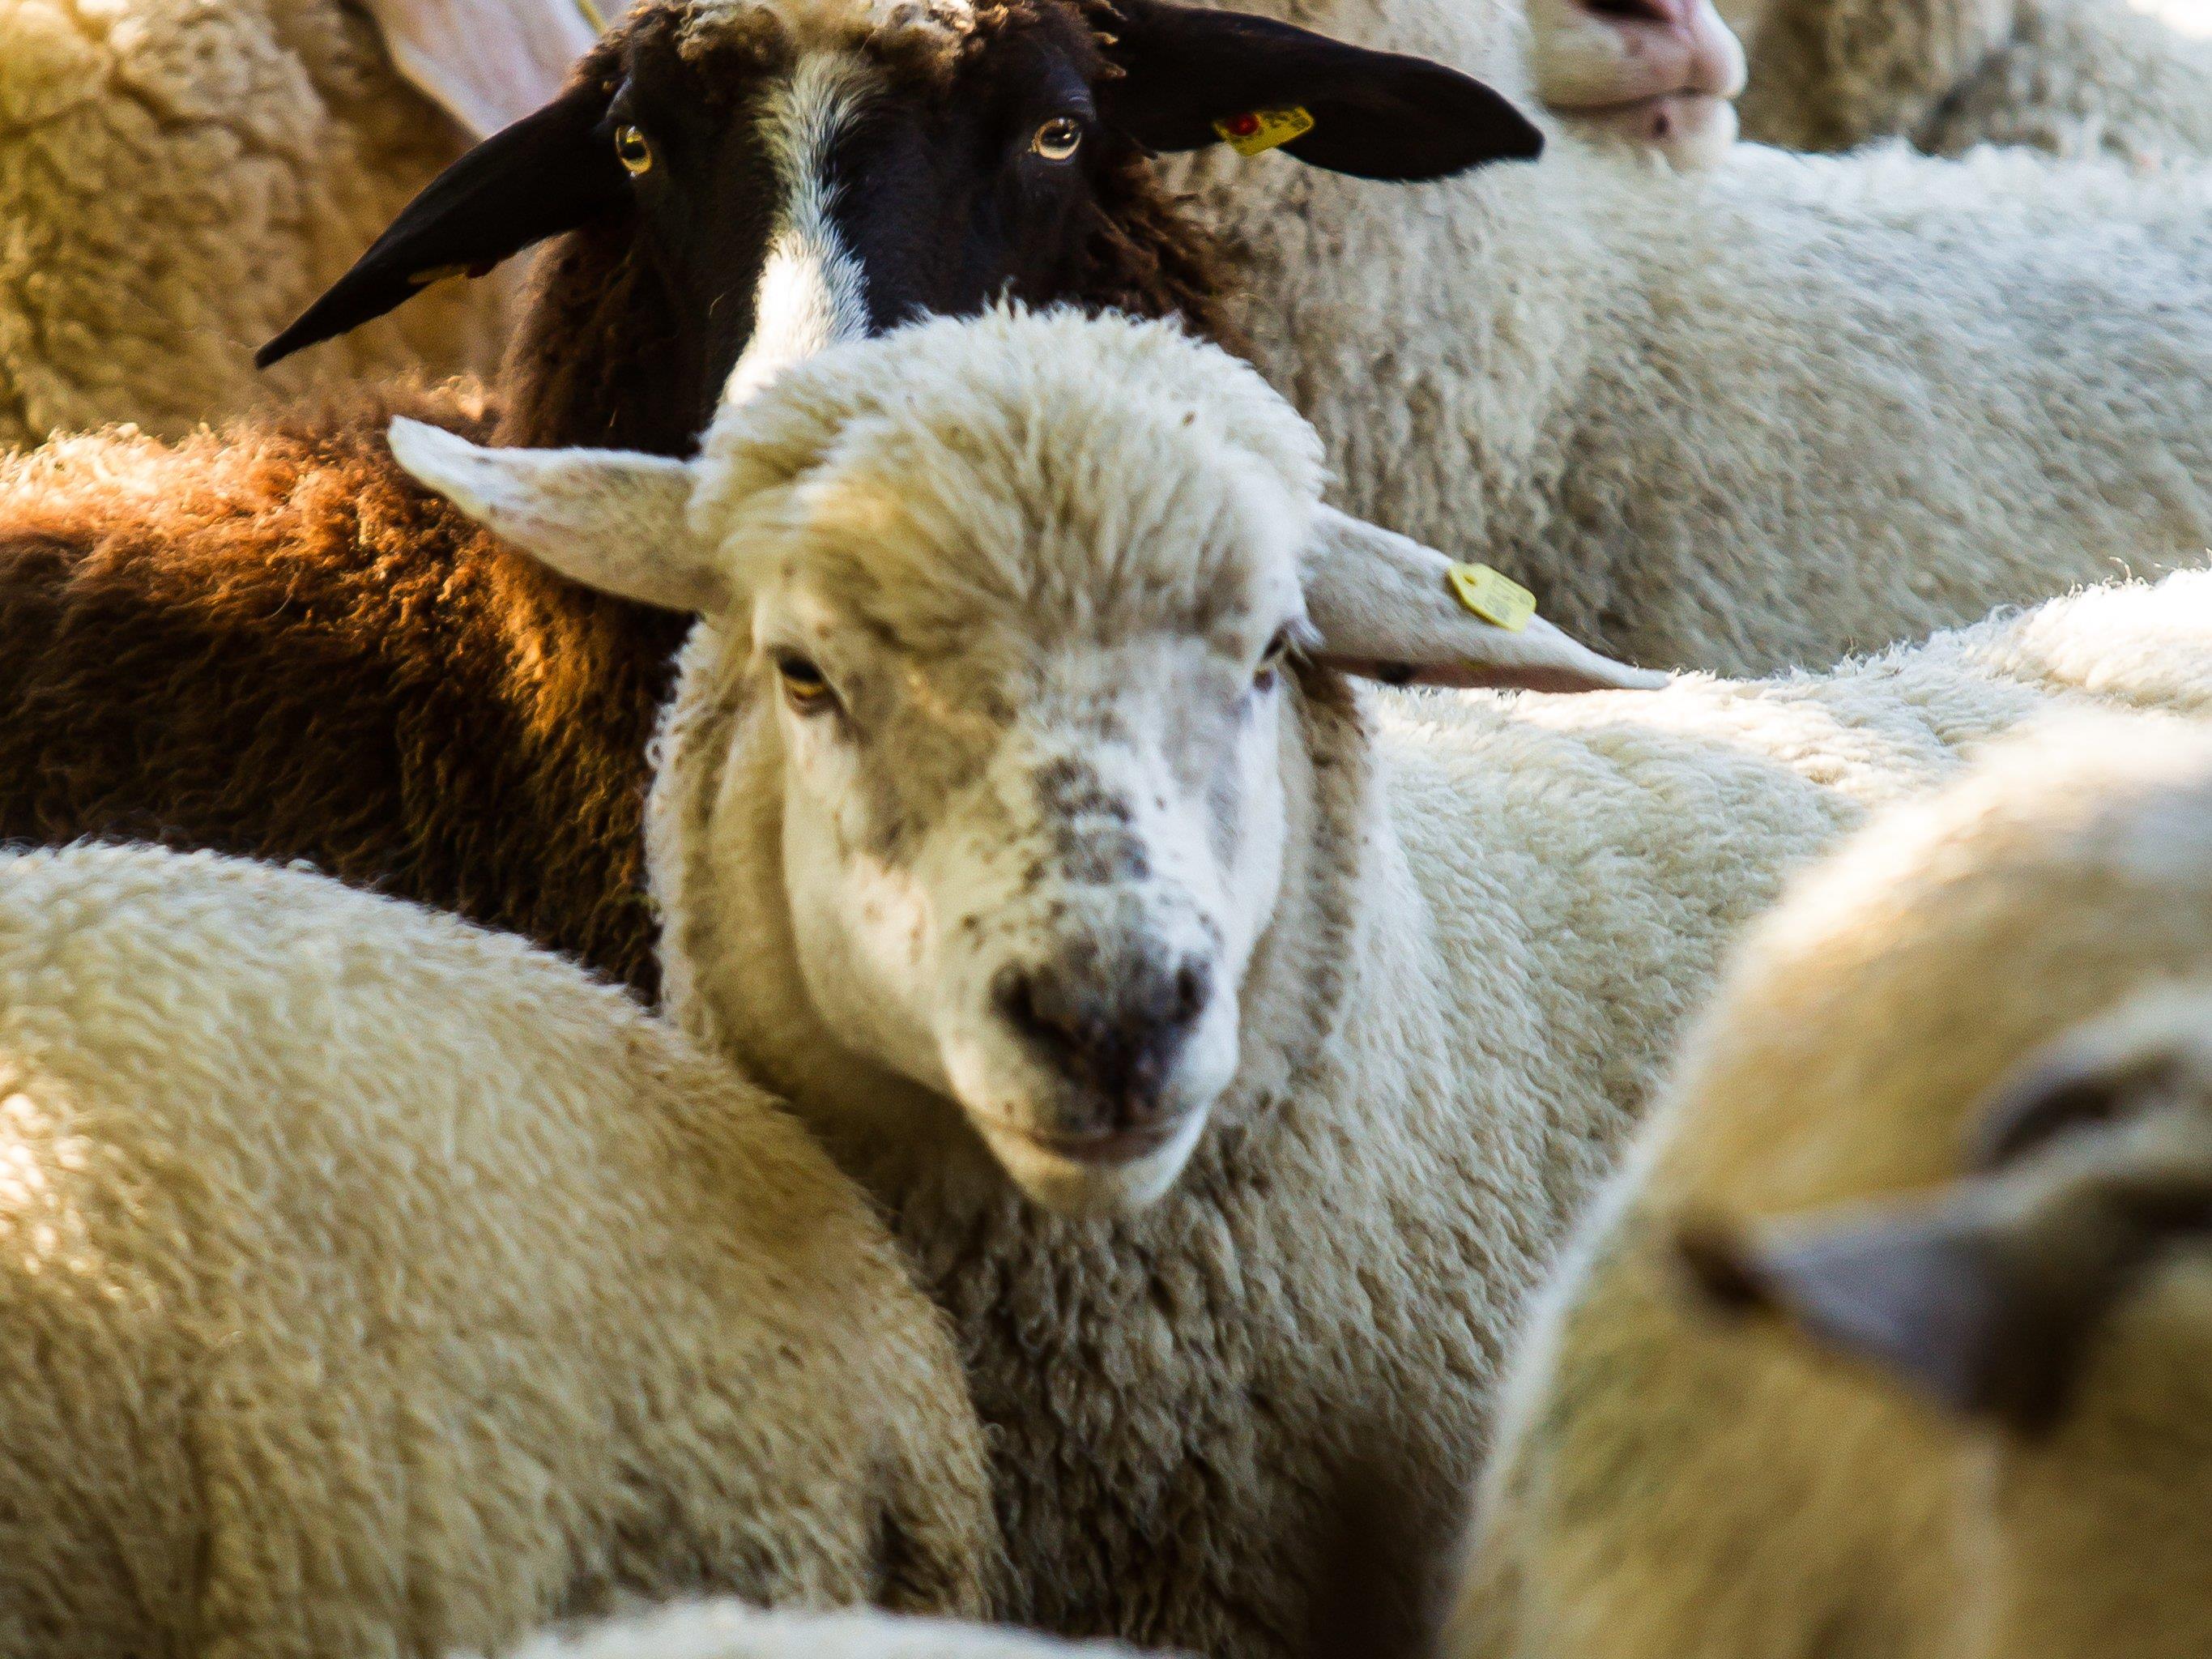 Grasende Schafe sorgen bei einem Anrainer für Unmut. Das Geräusch der Glocken ist ihm zu laut.